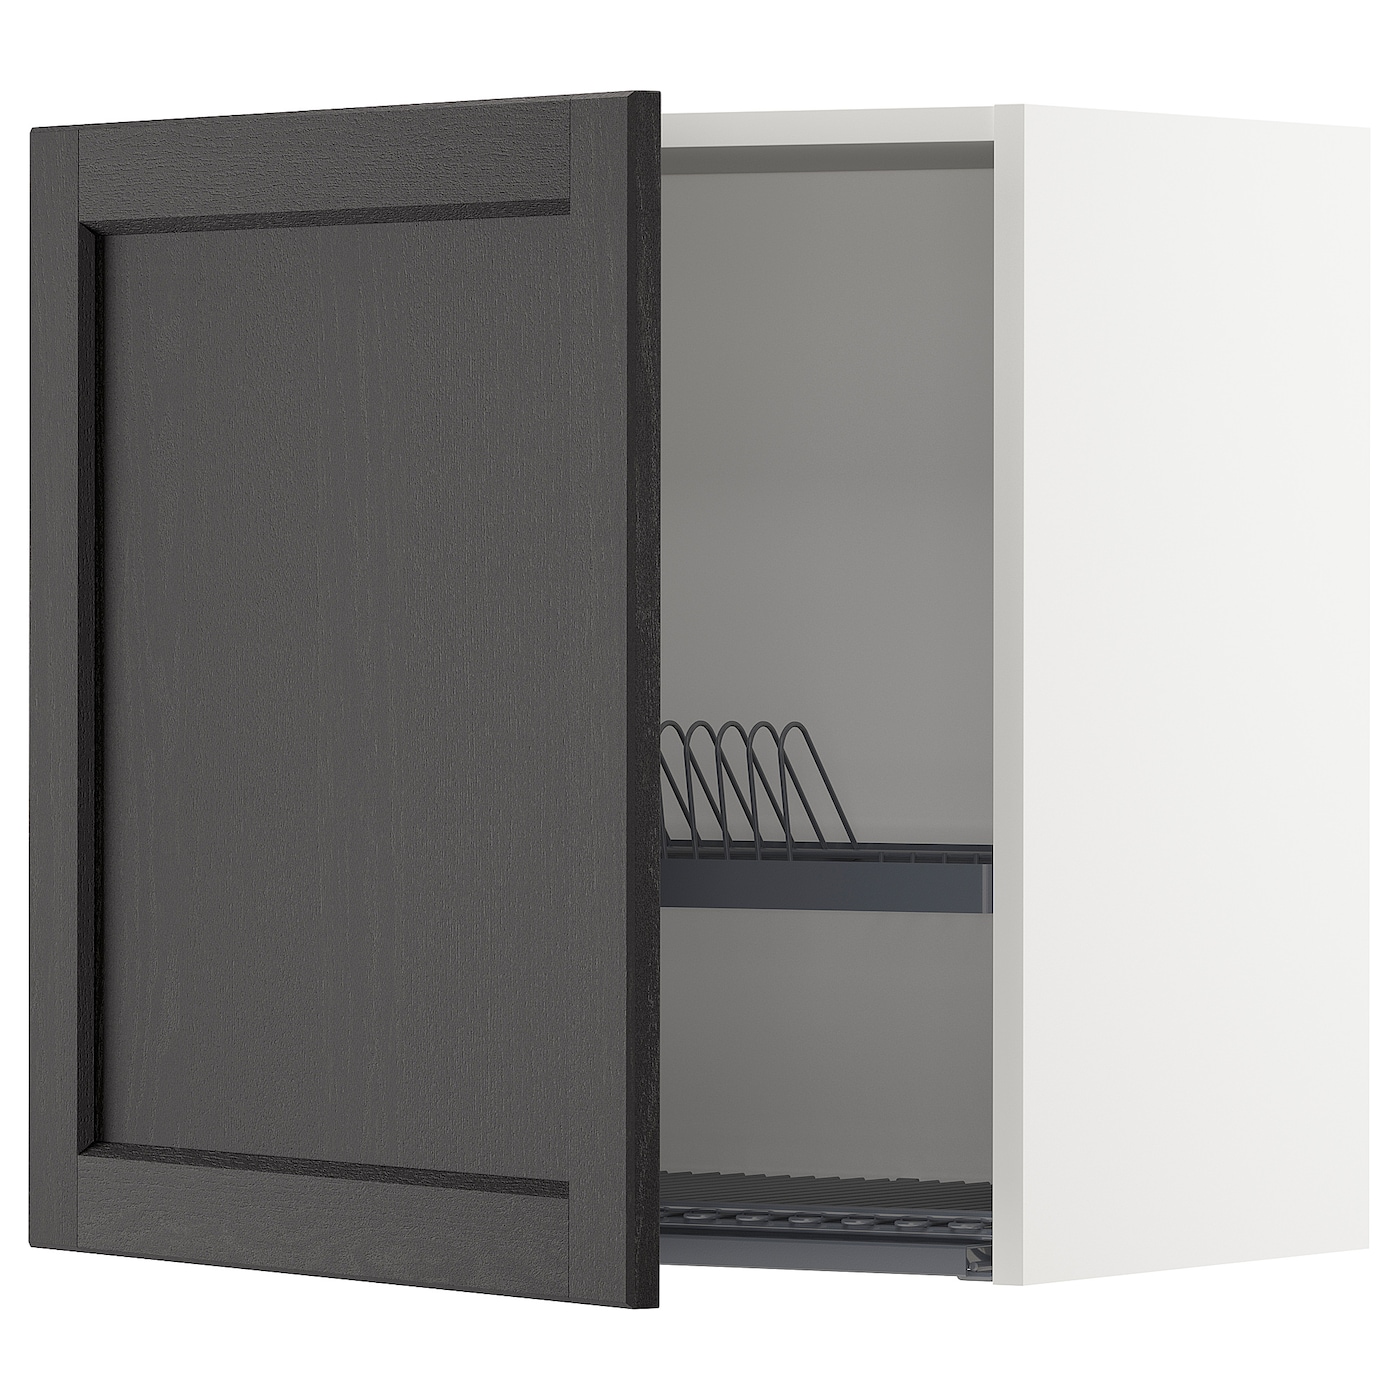 Навесной шкаф с сушилкой - METOD IKEA/ МЕТОД ИКЕА, 60х60 см, белый/черный